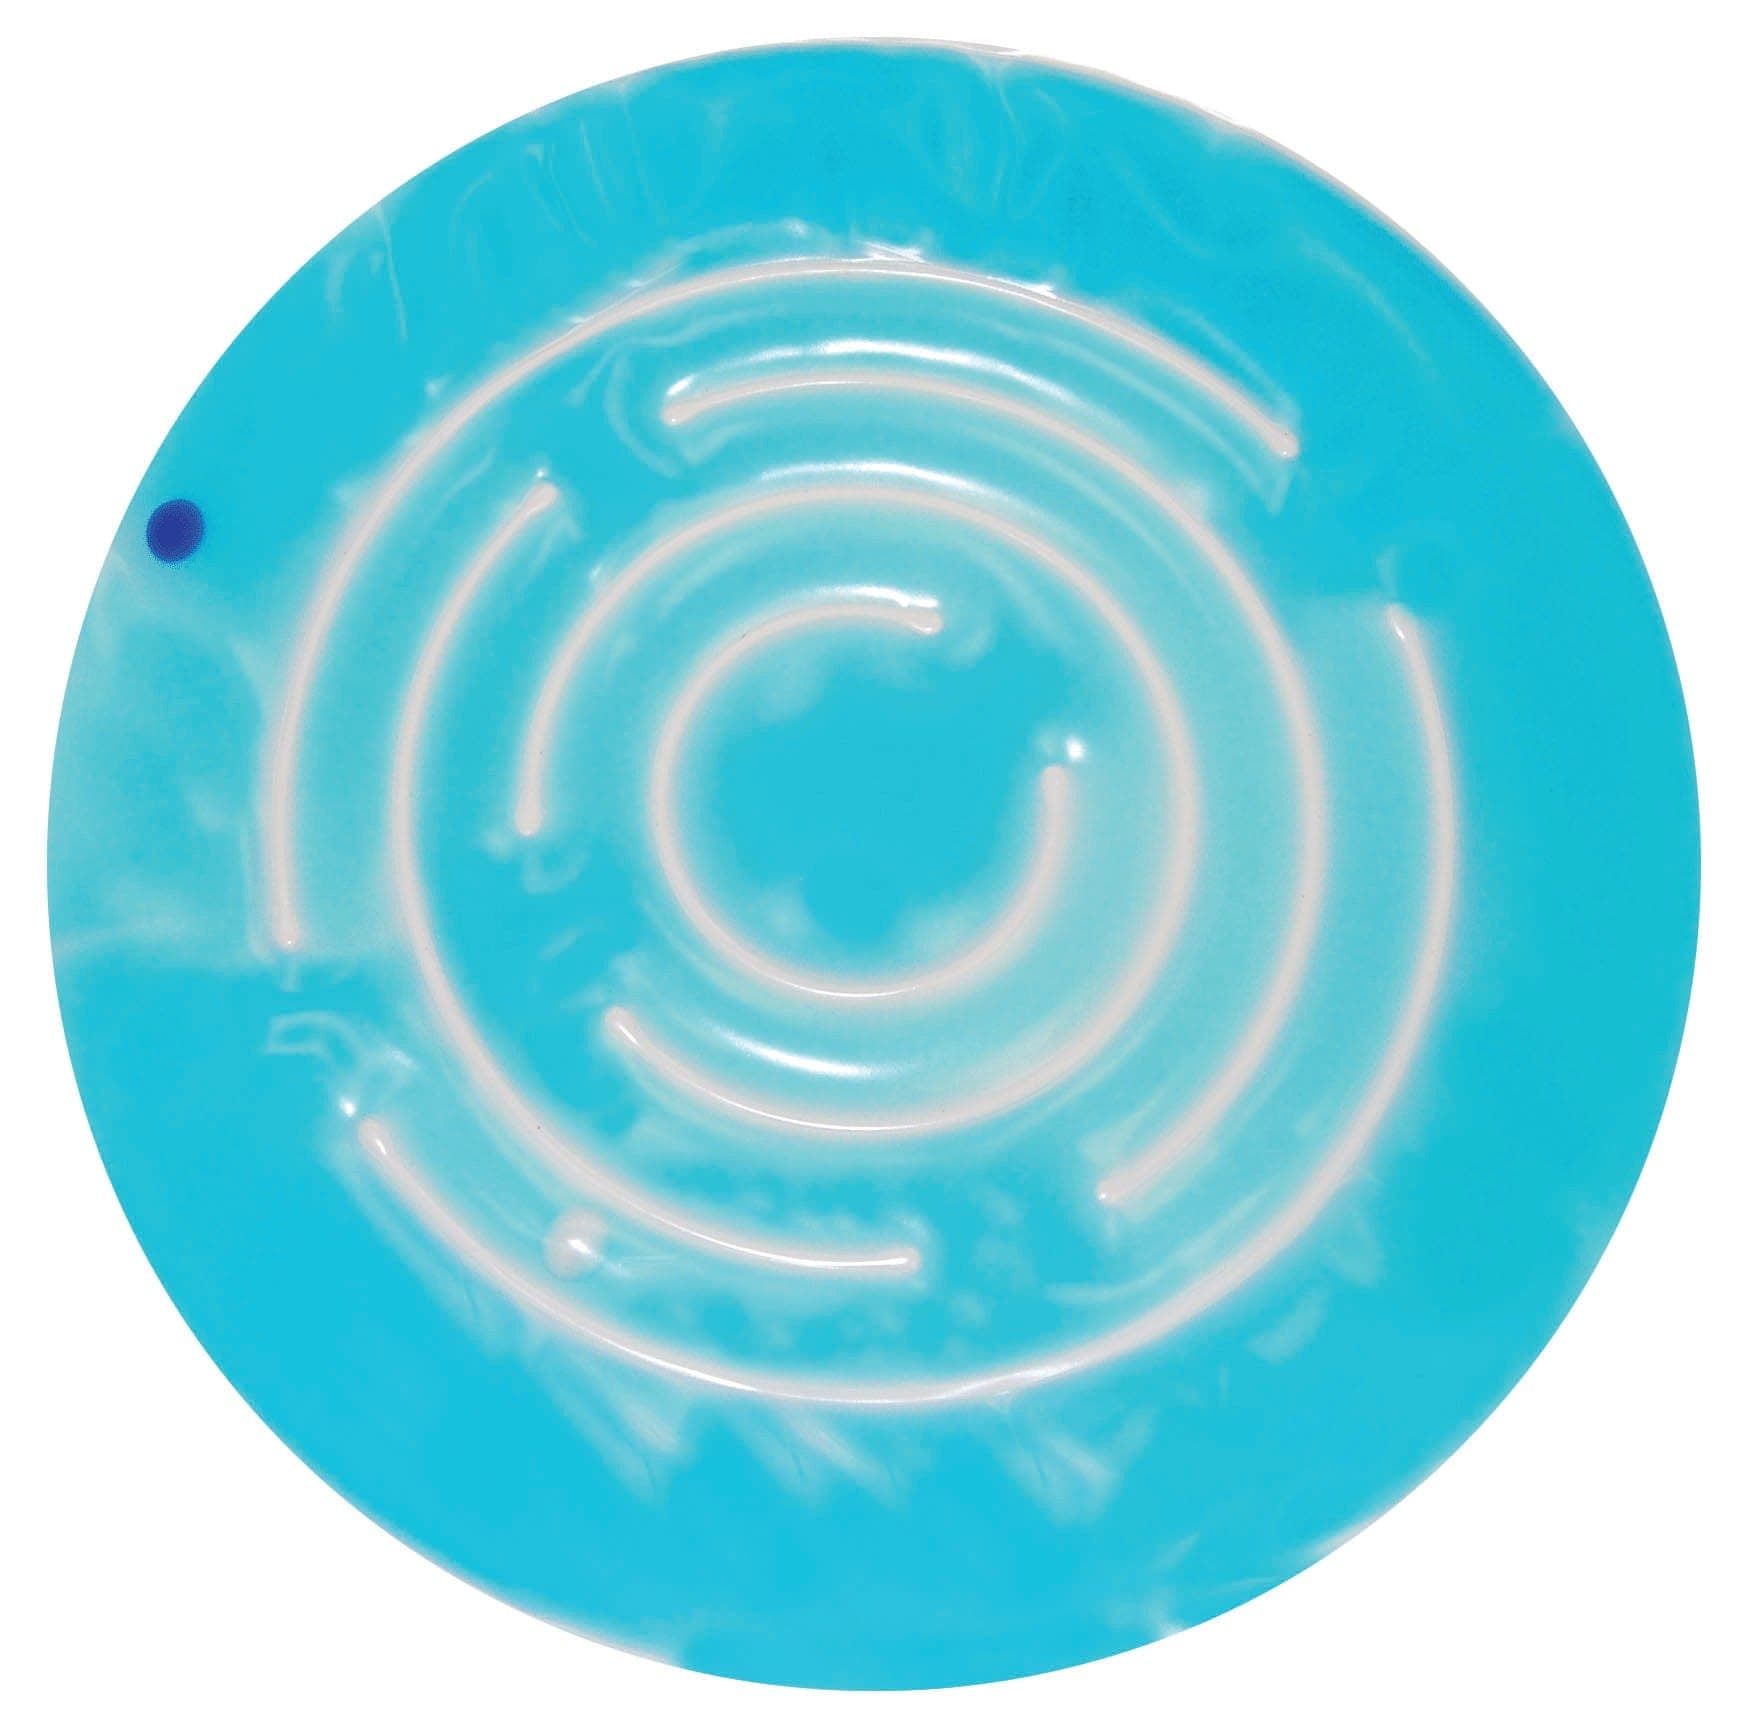 SkilCare Sensory Integration Blue SkilCare Gel Spiral - Blue